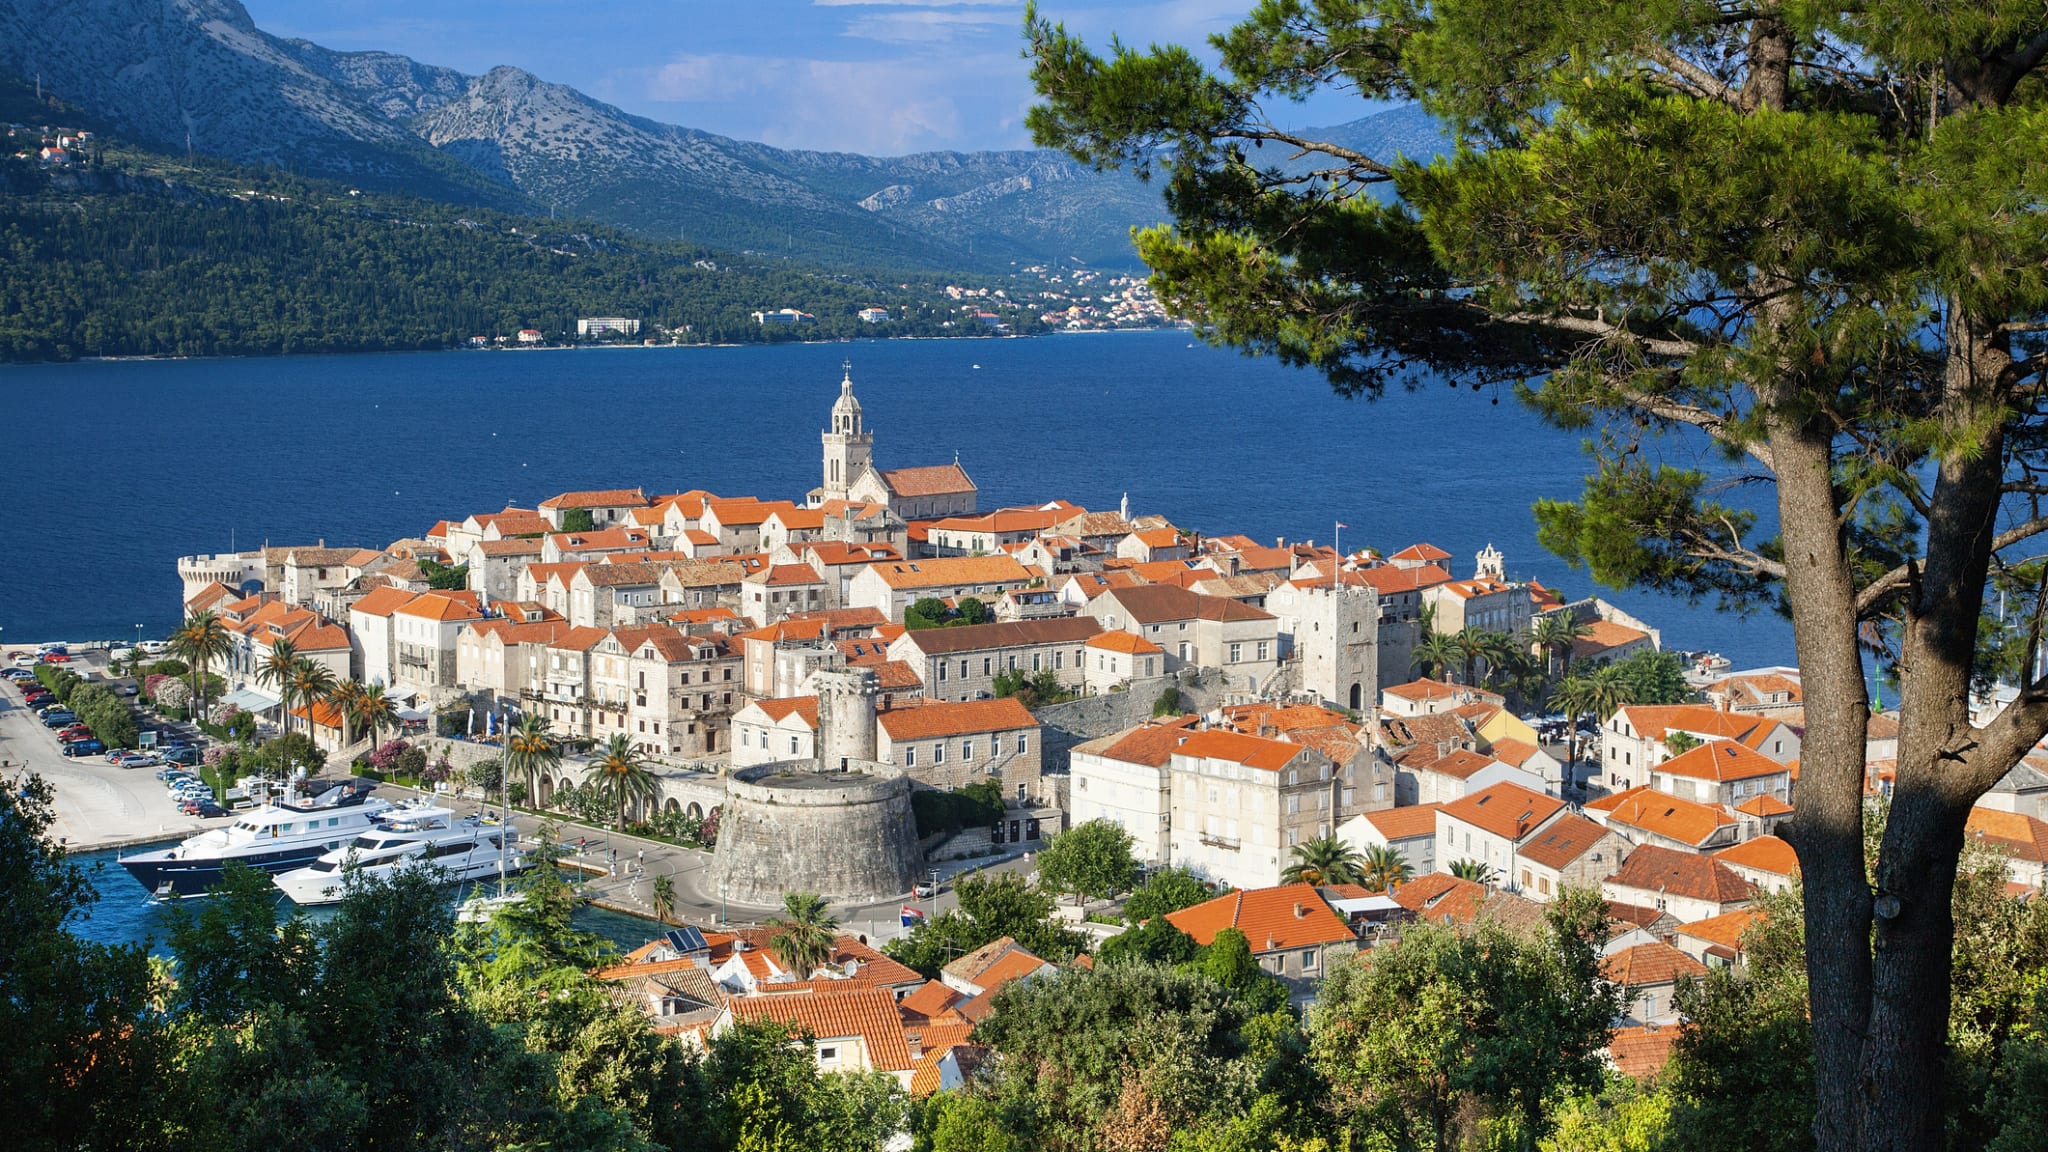 Korcula, Kroatien ©Sylvain Sonnet/The Image Bank via Getty Images